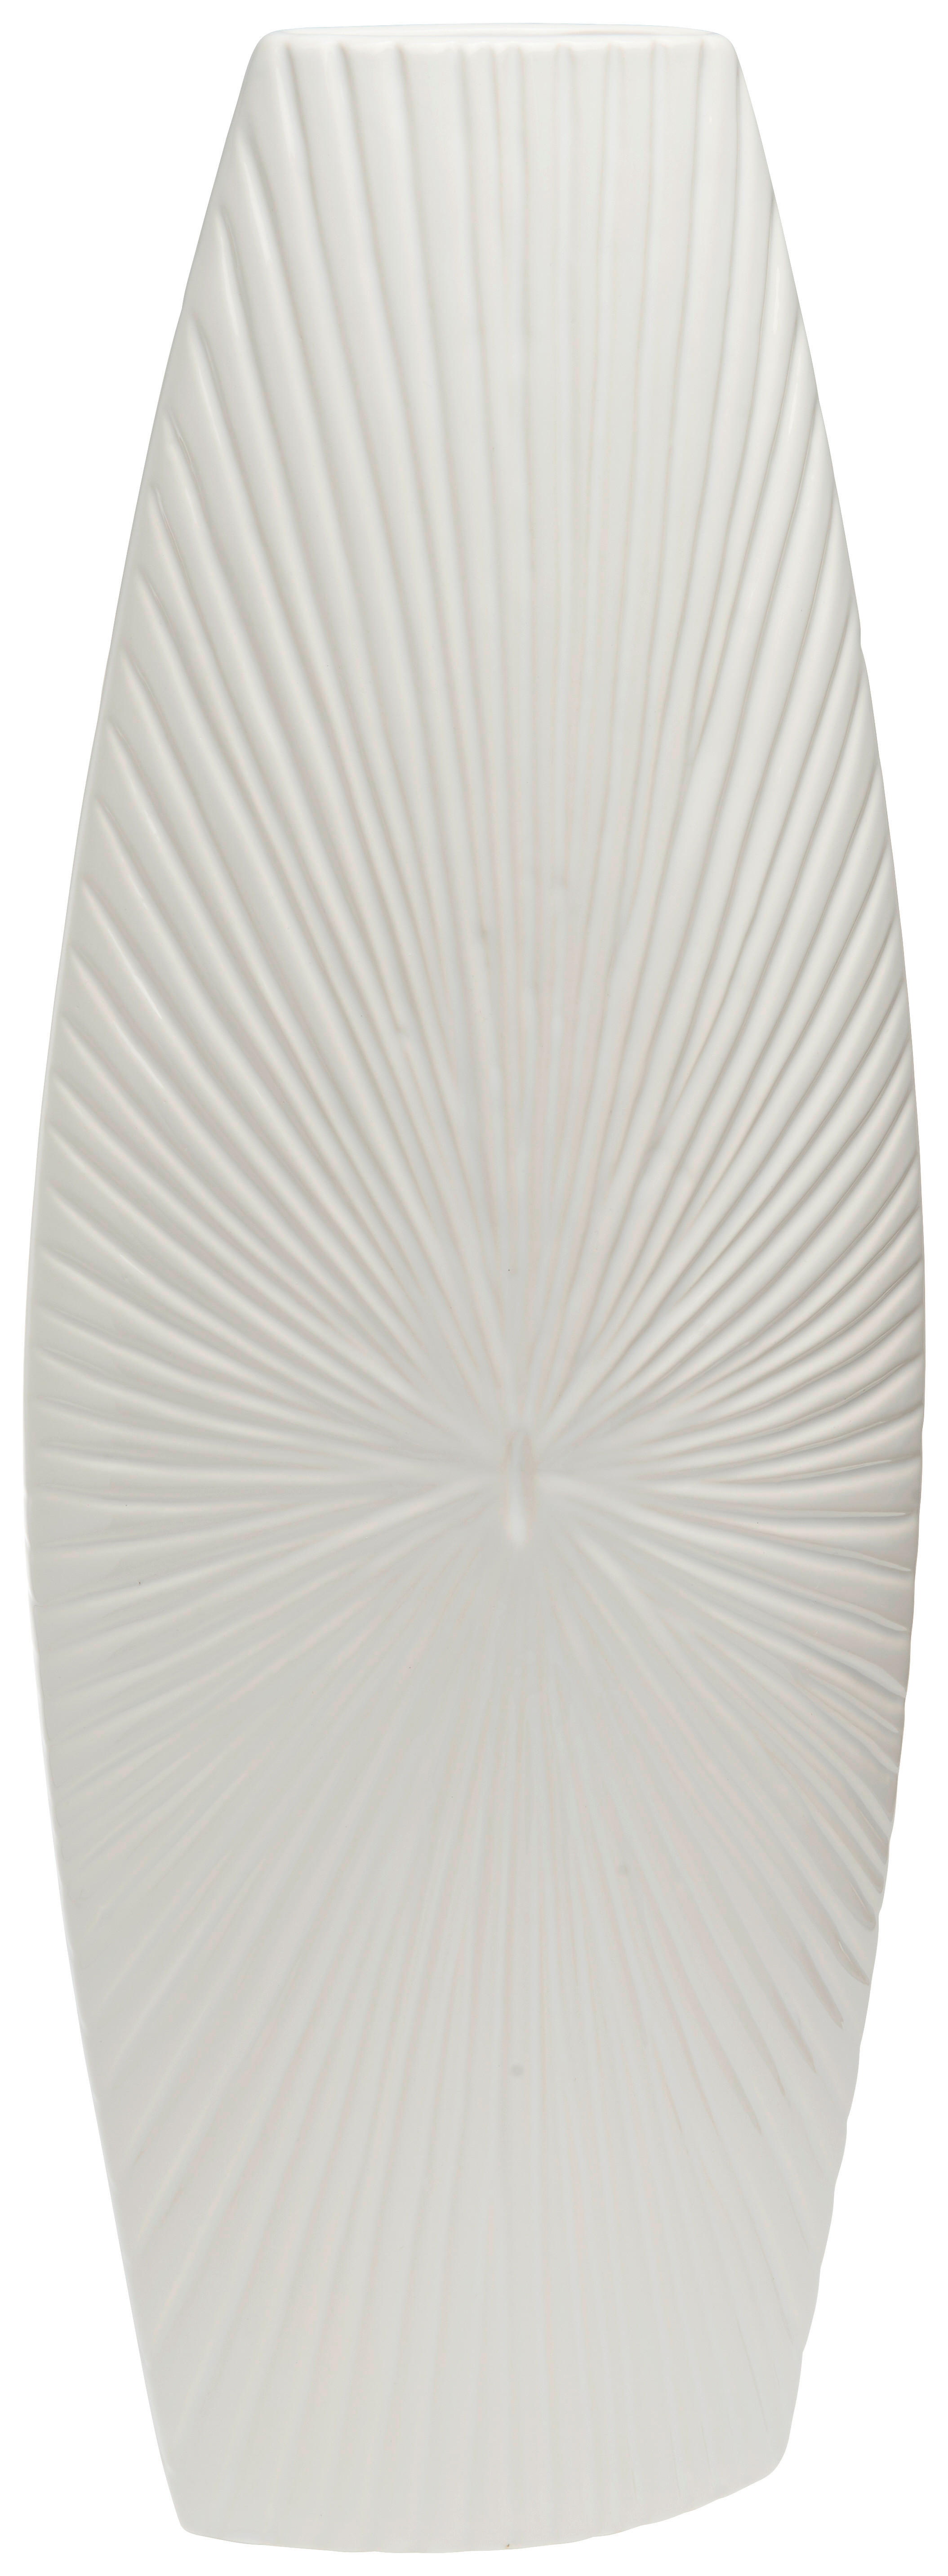 VÁZA, keramika, 57 cm - biela, Design, keramika (21/58/11cm) - Ambia Home